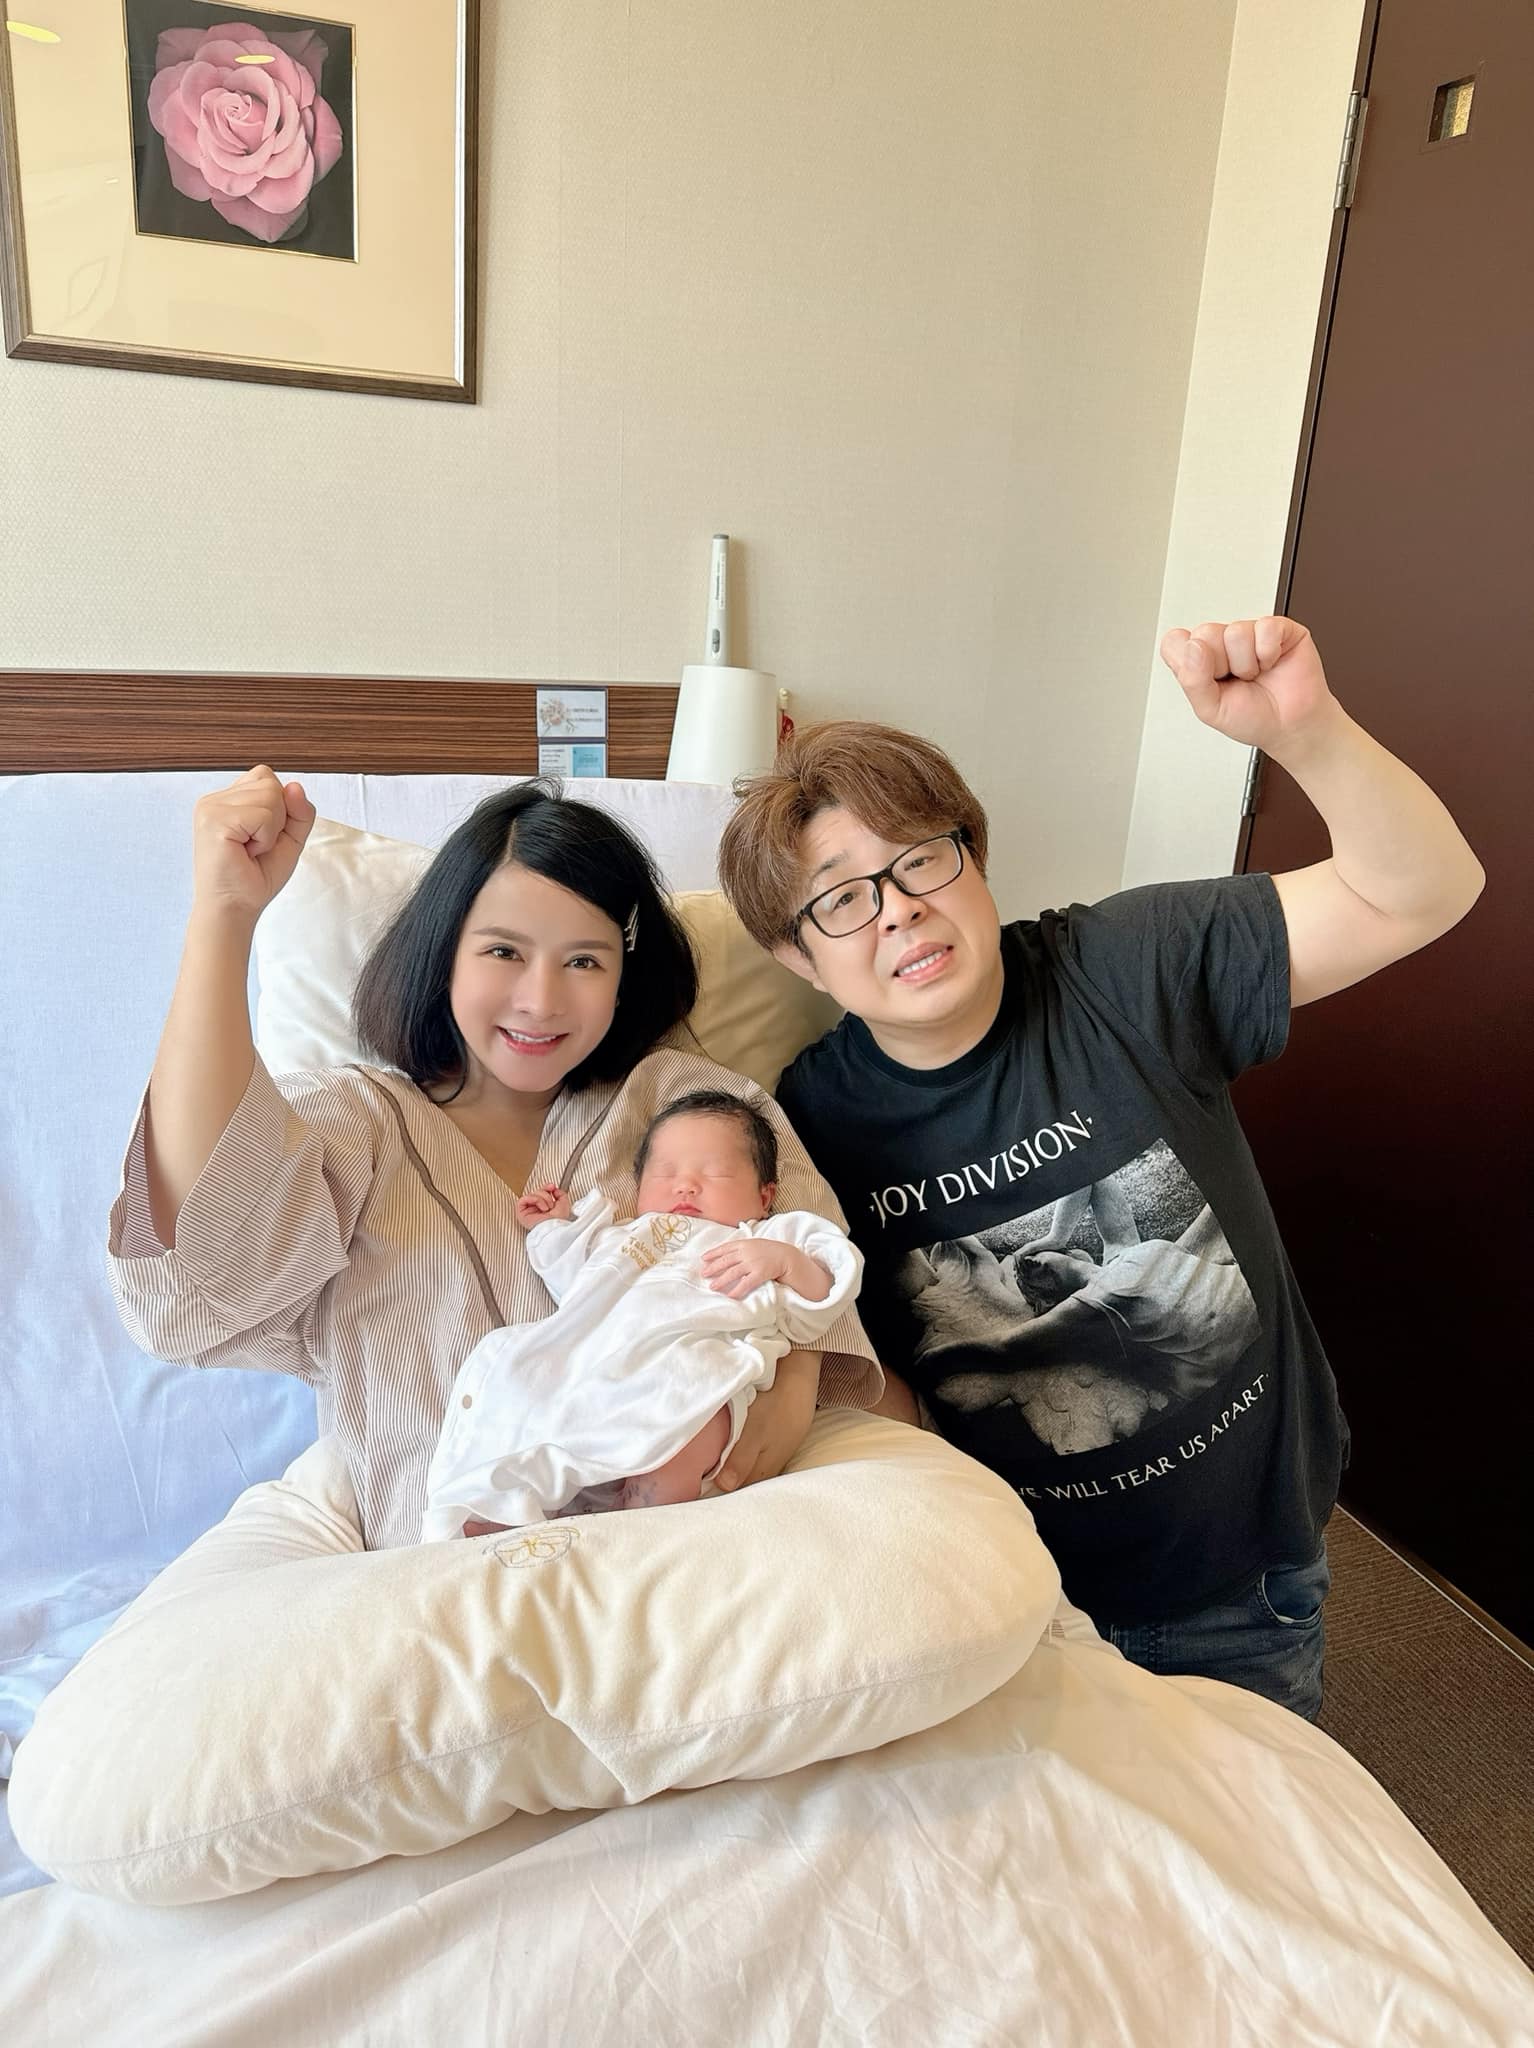 Bà Nhân Vlog thắc mắc vì sao bác sĩ ở Nhật cho em bé sơ sinh mặc áo trái, cấm đeo bao tay? - ảnh 3